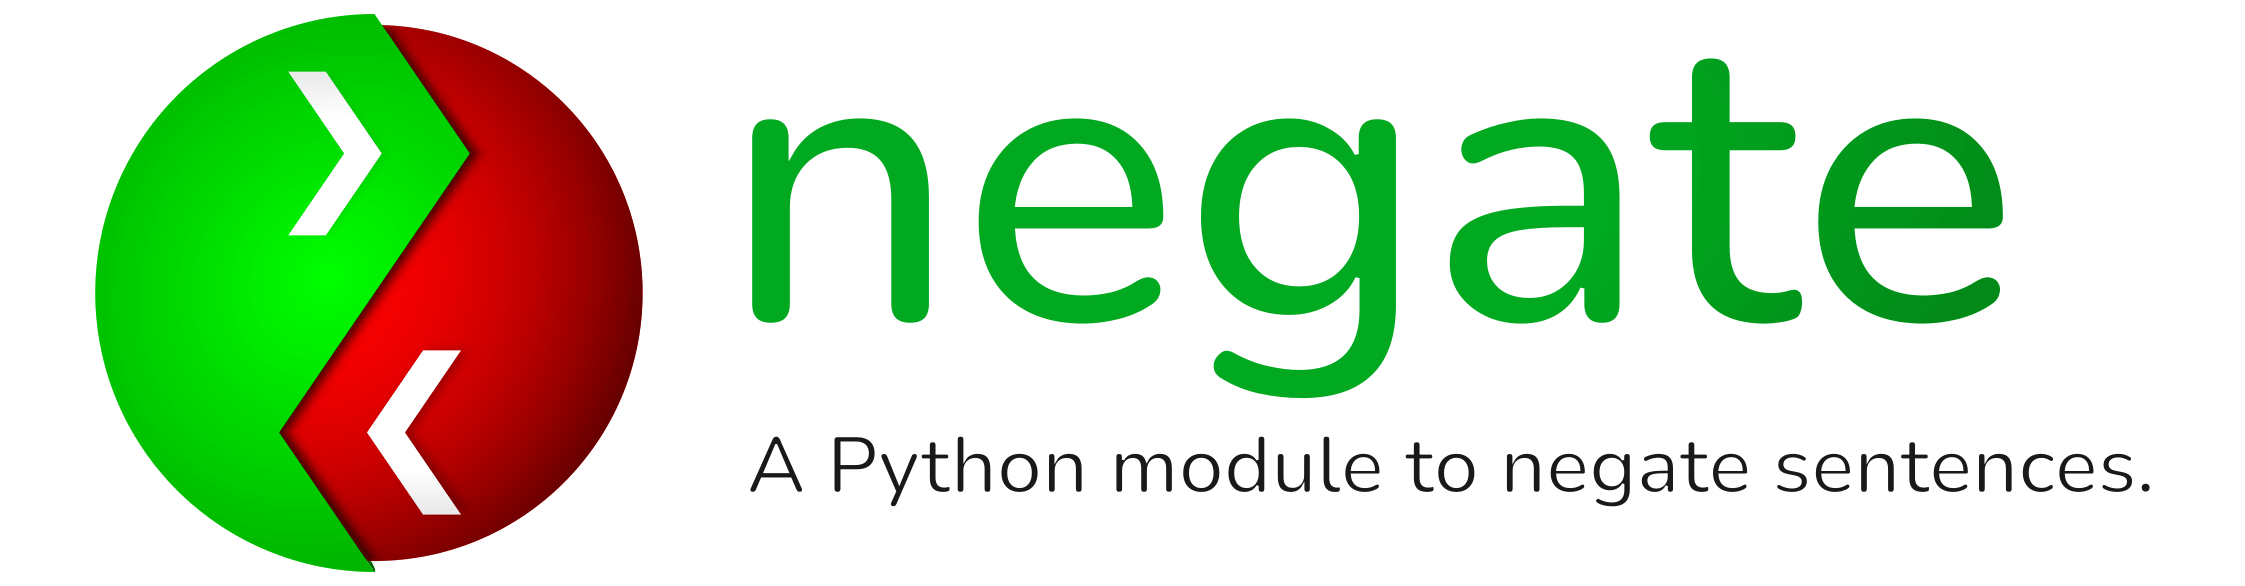 Negate: A Python module to negate sentences.